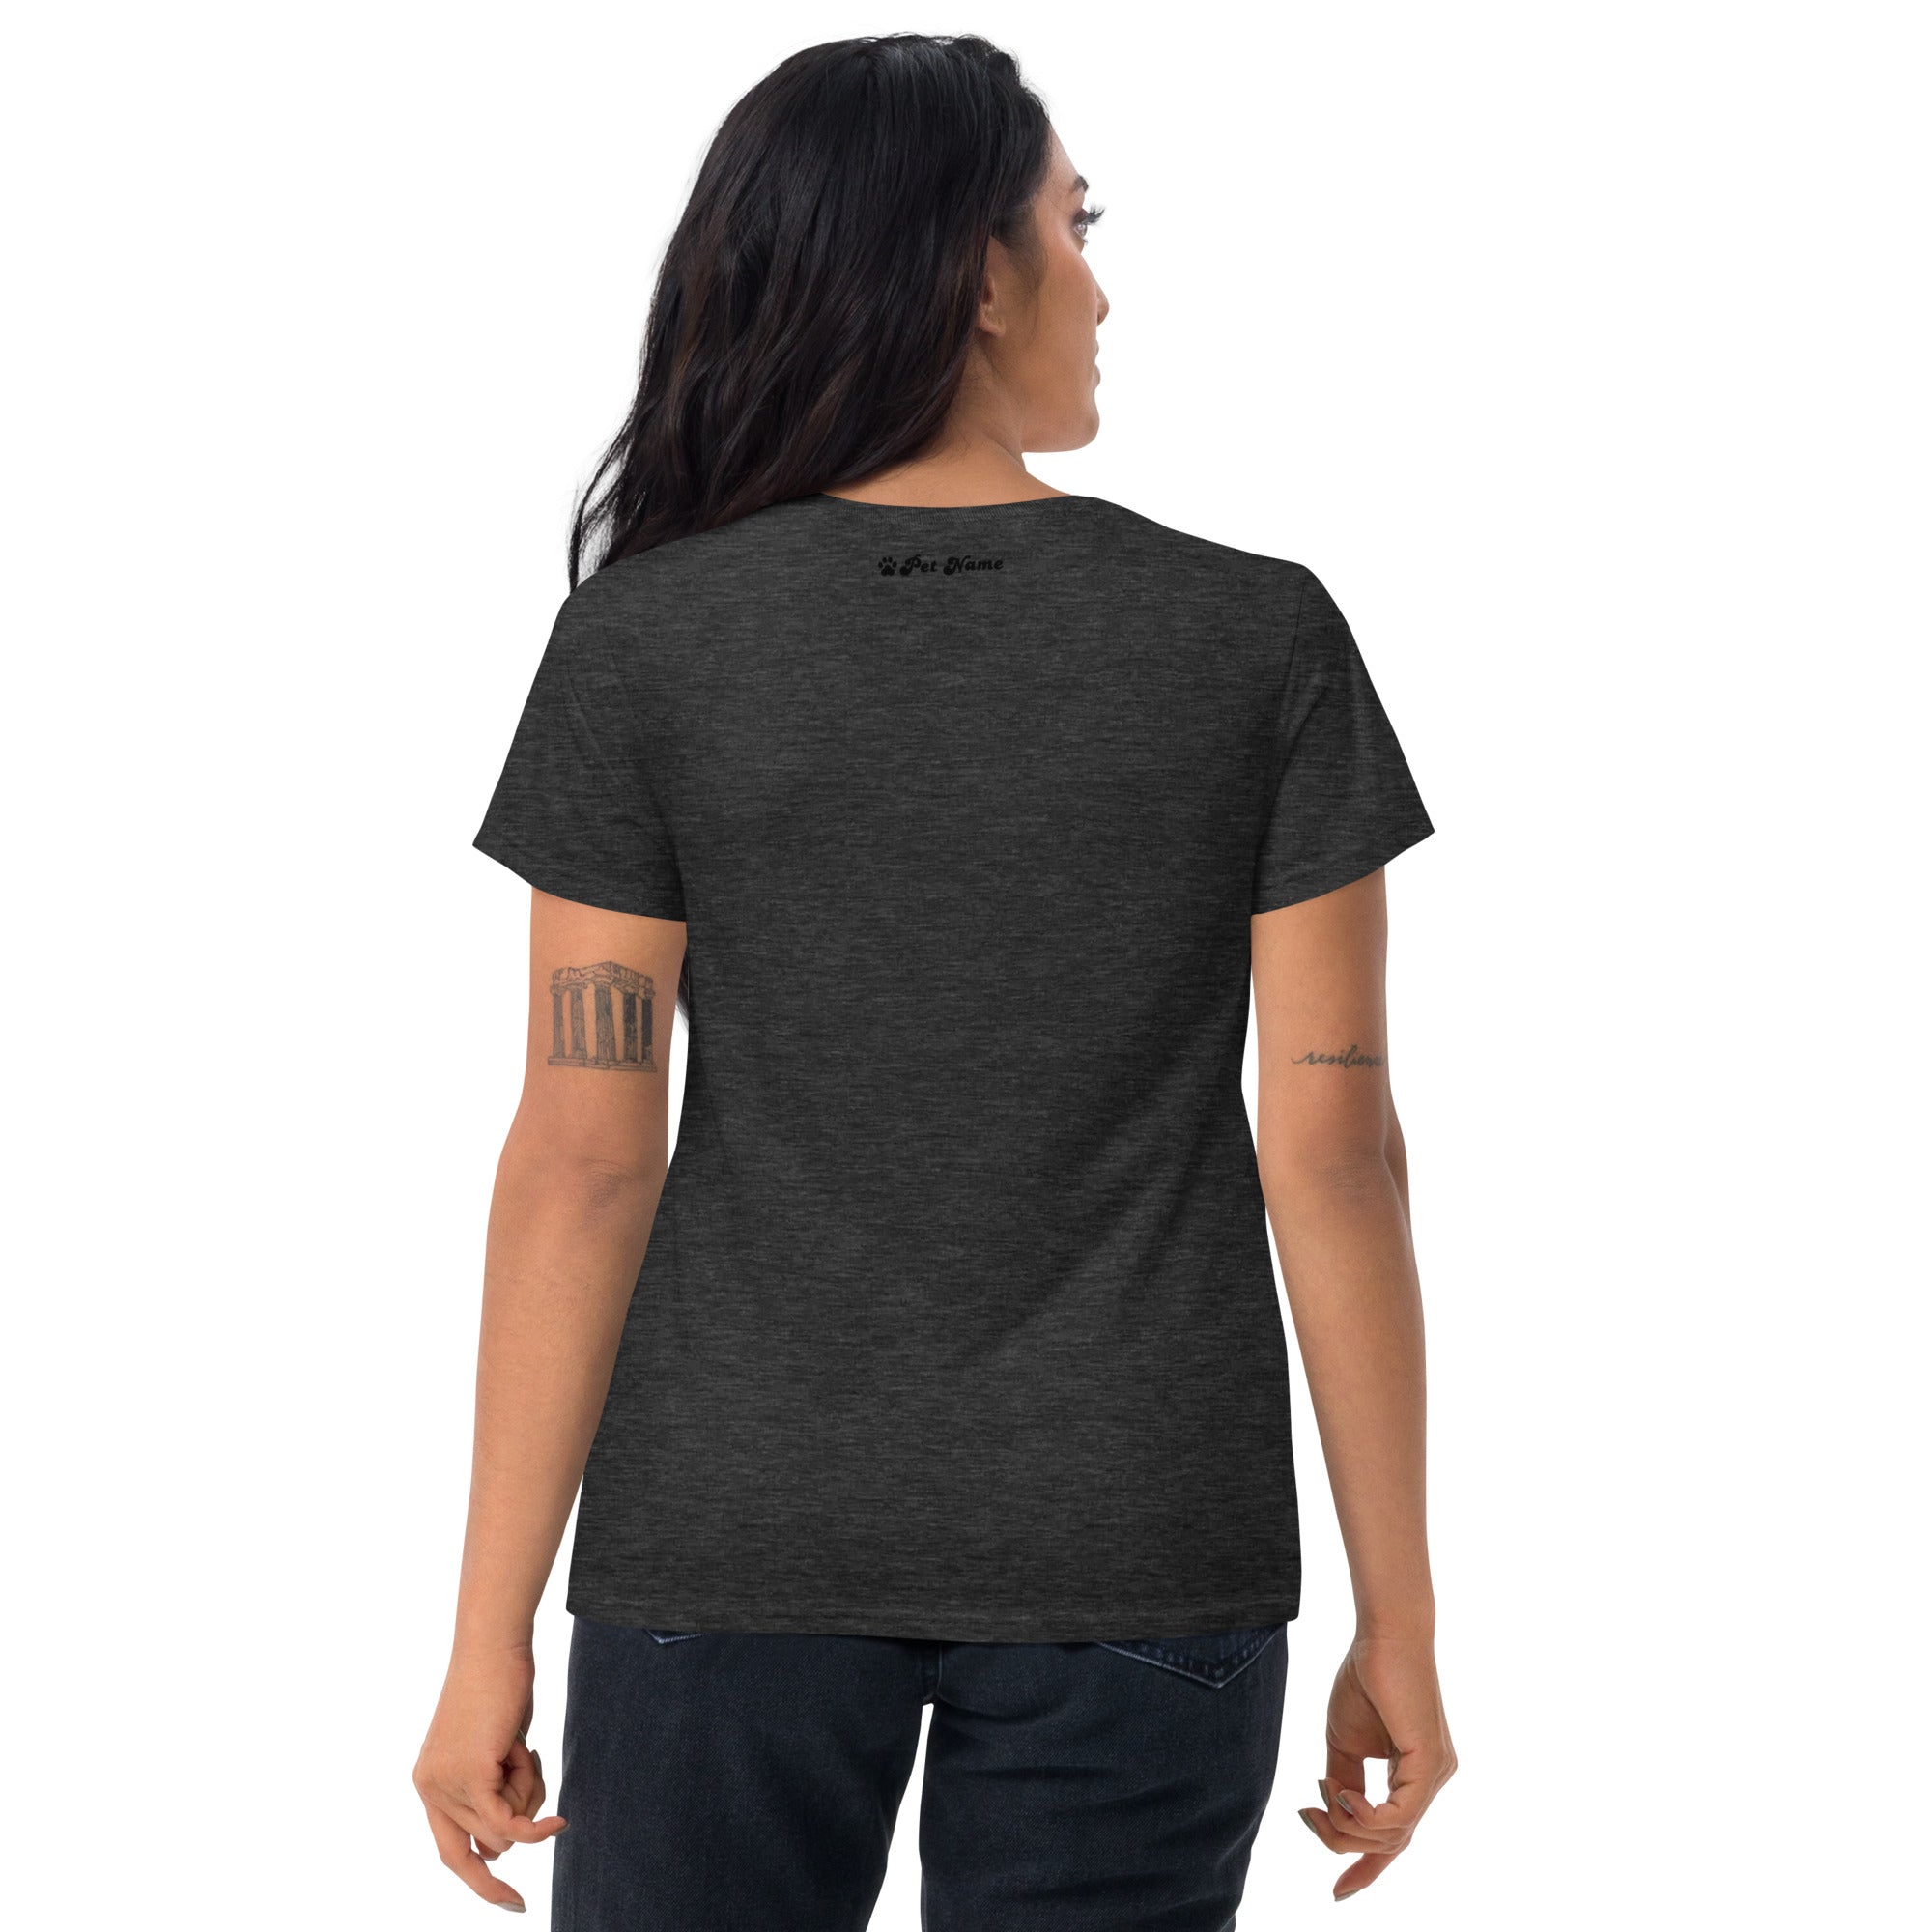 English Mastiff Women's short sleeve t-shirt